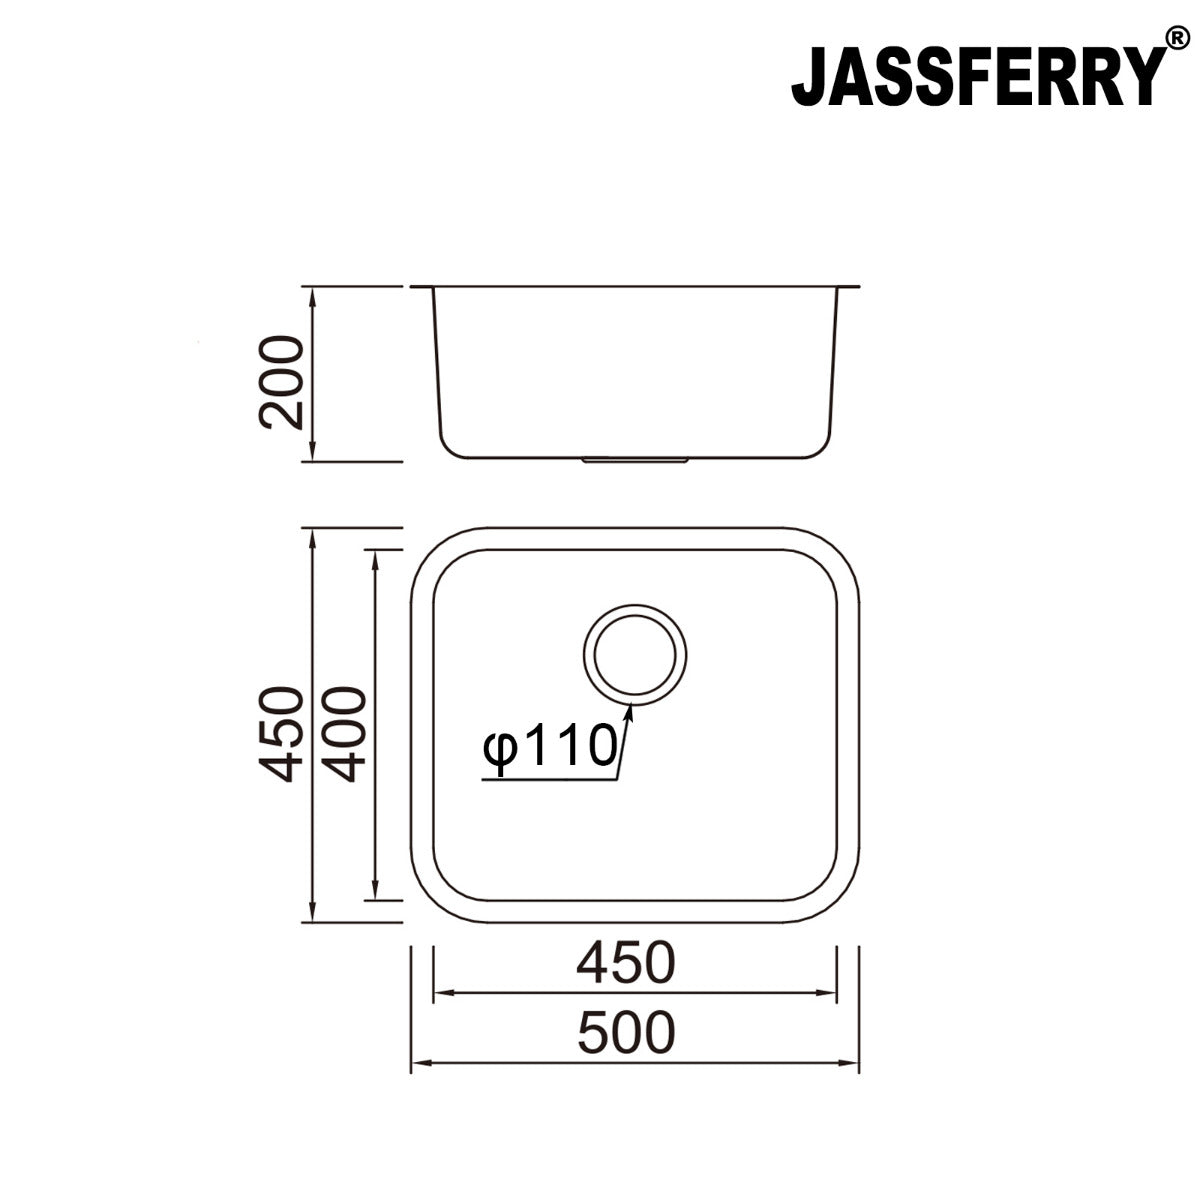 JassferryJASSFERRY 500 x 450 MM Undermount Stainless Steel Kitchen Sink Single 1.0 Bowl - 621Kitchen Sinks